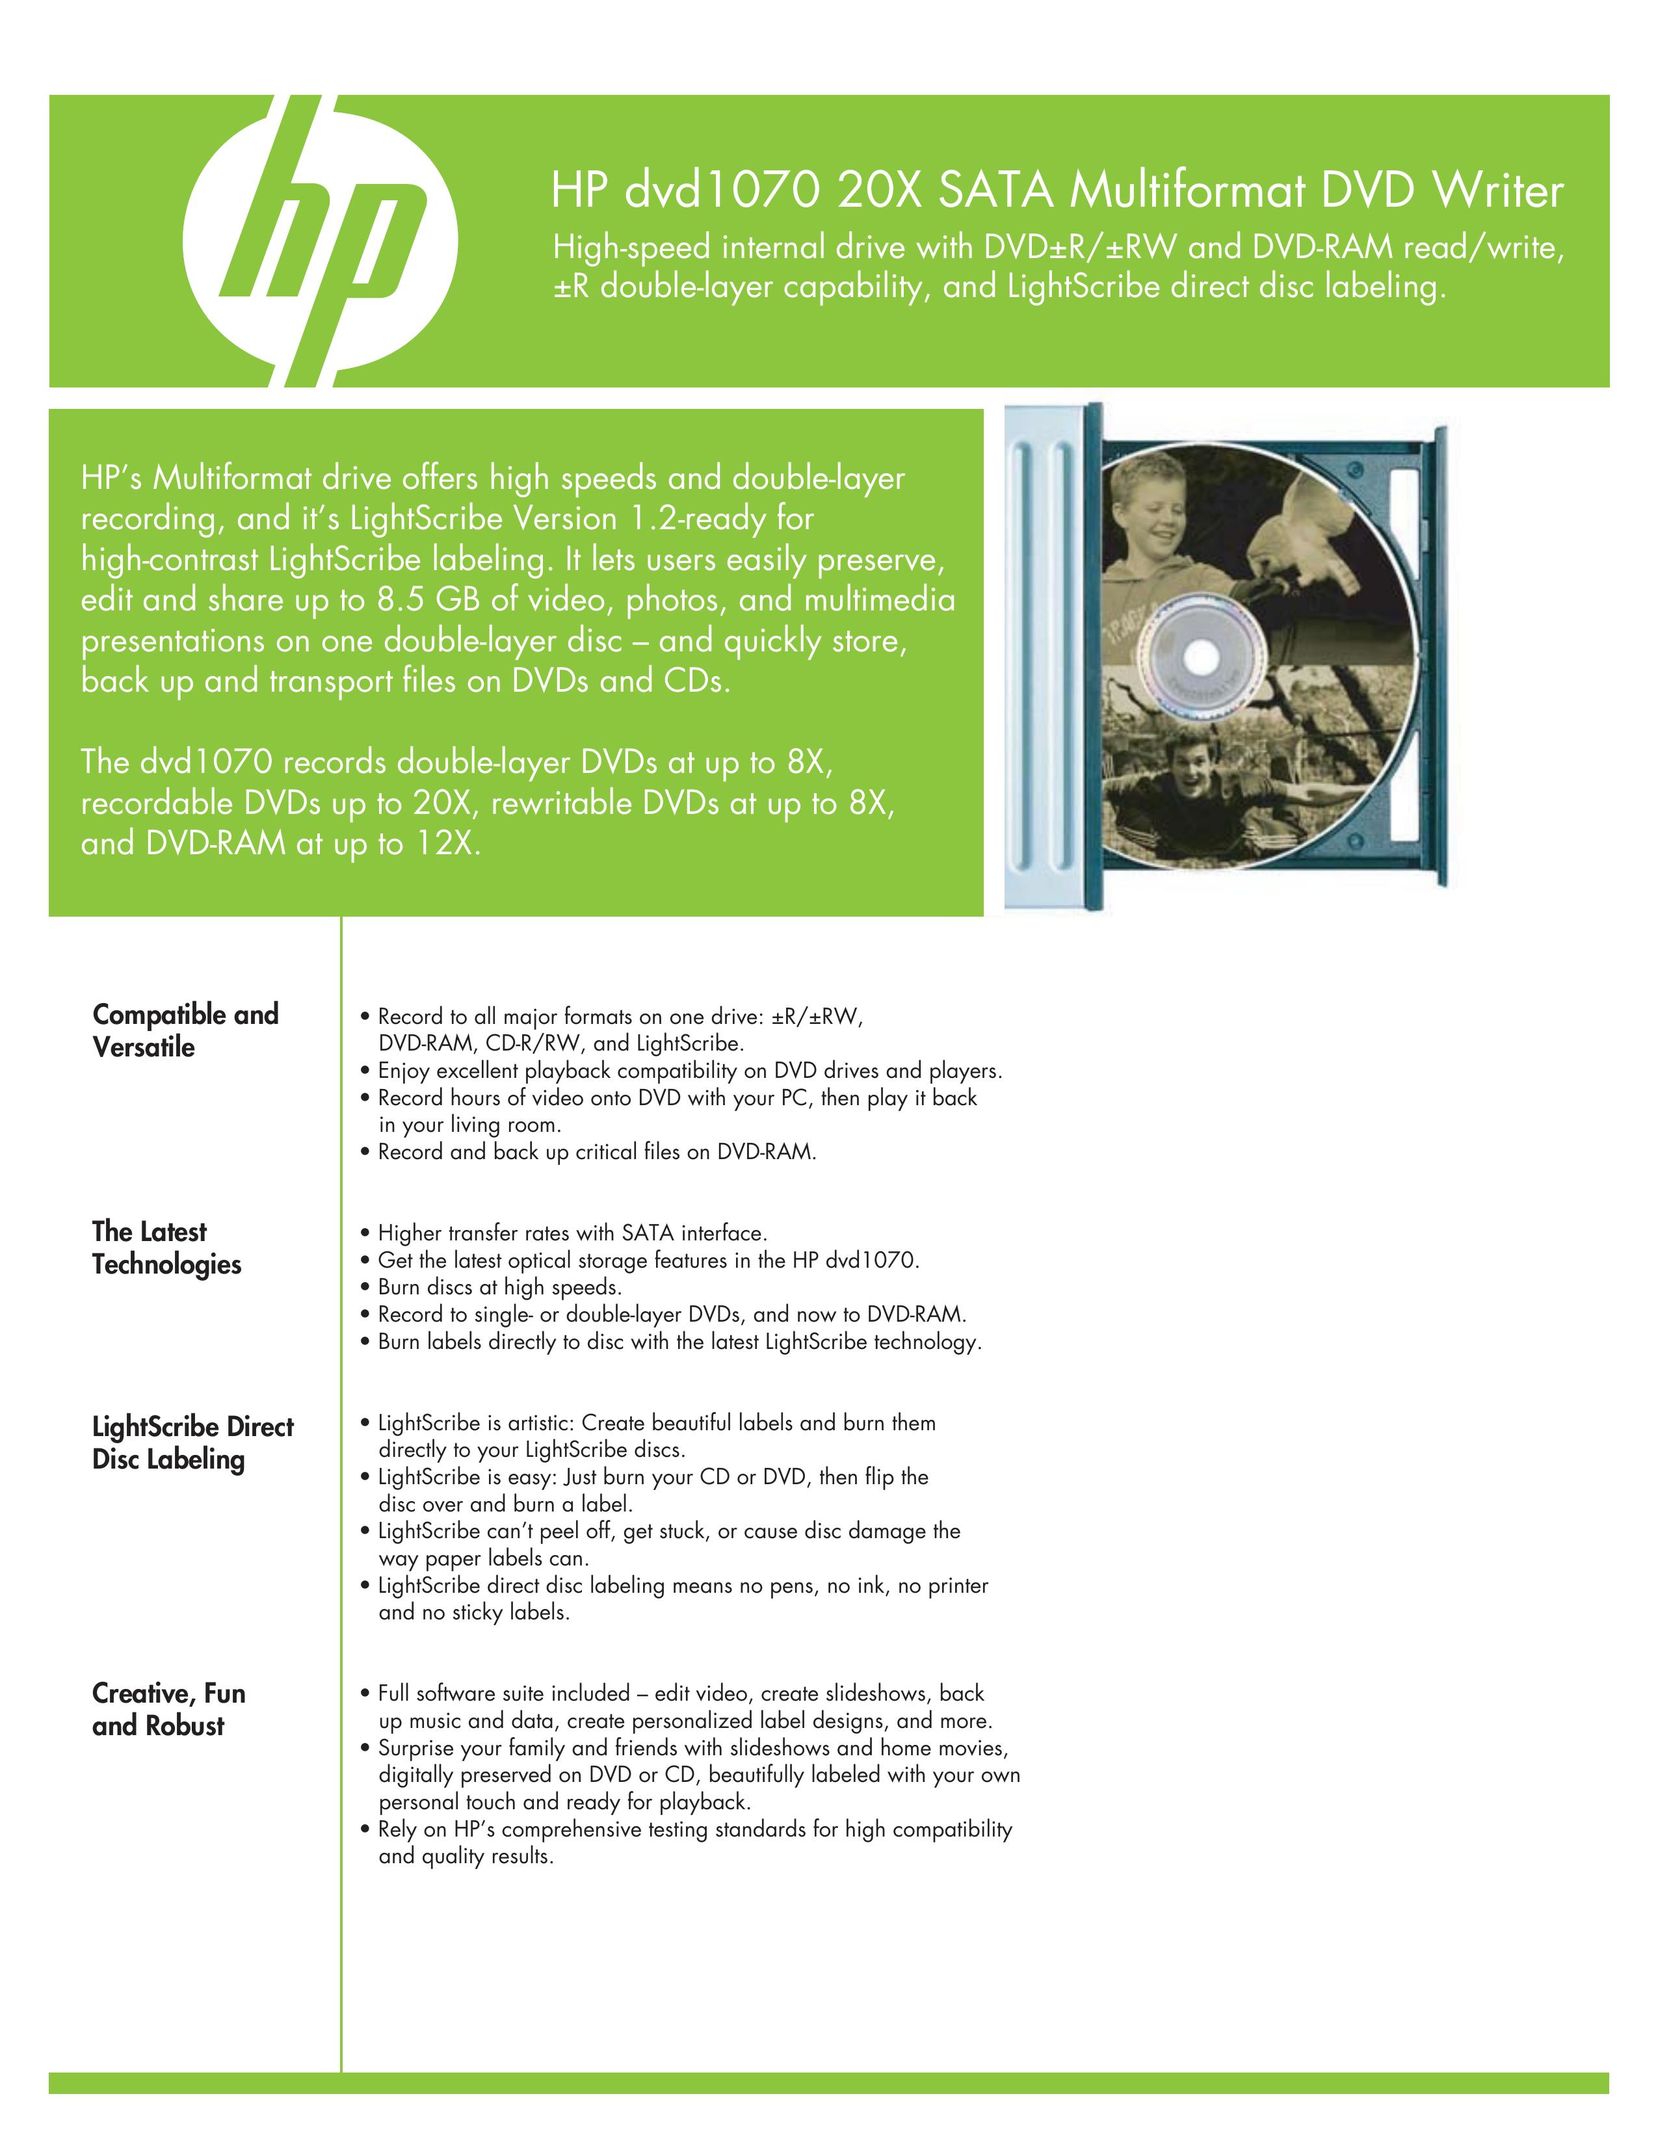 HP (Hewlett-Packard) 243431 Computer Accessories User Manual